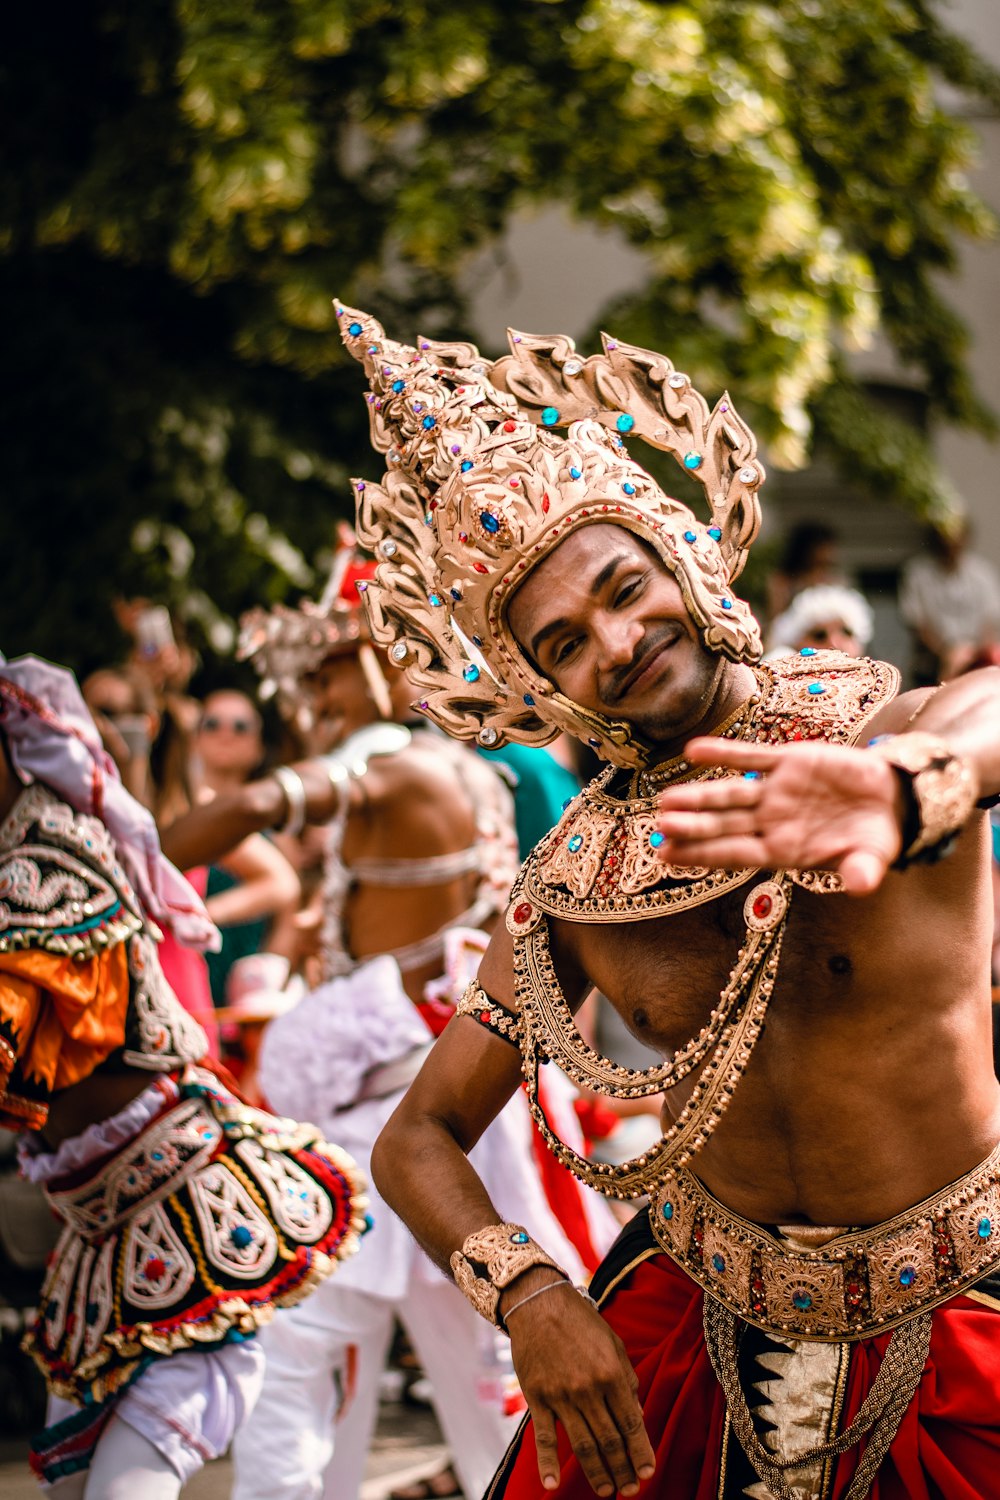 men with golden headdresses dancing on street